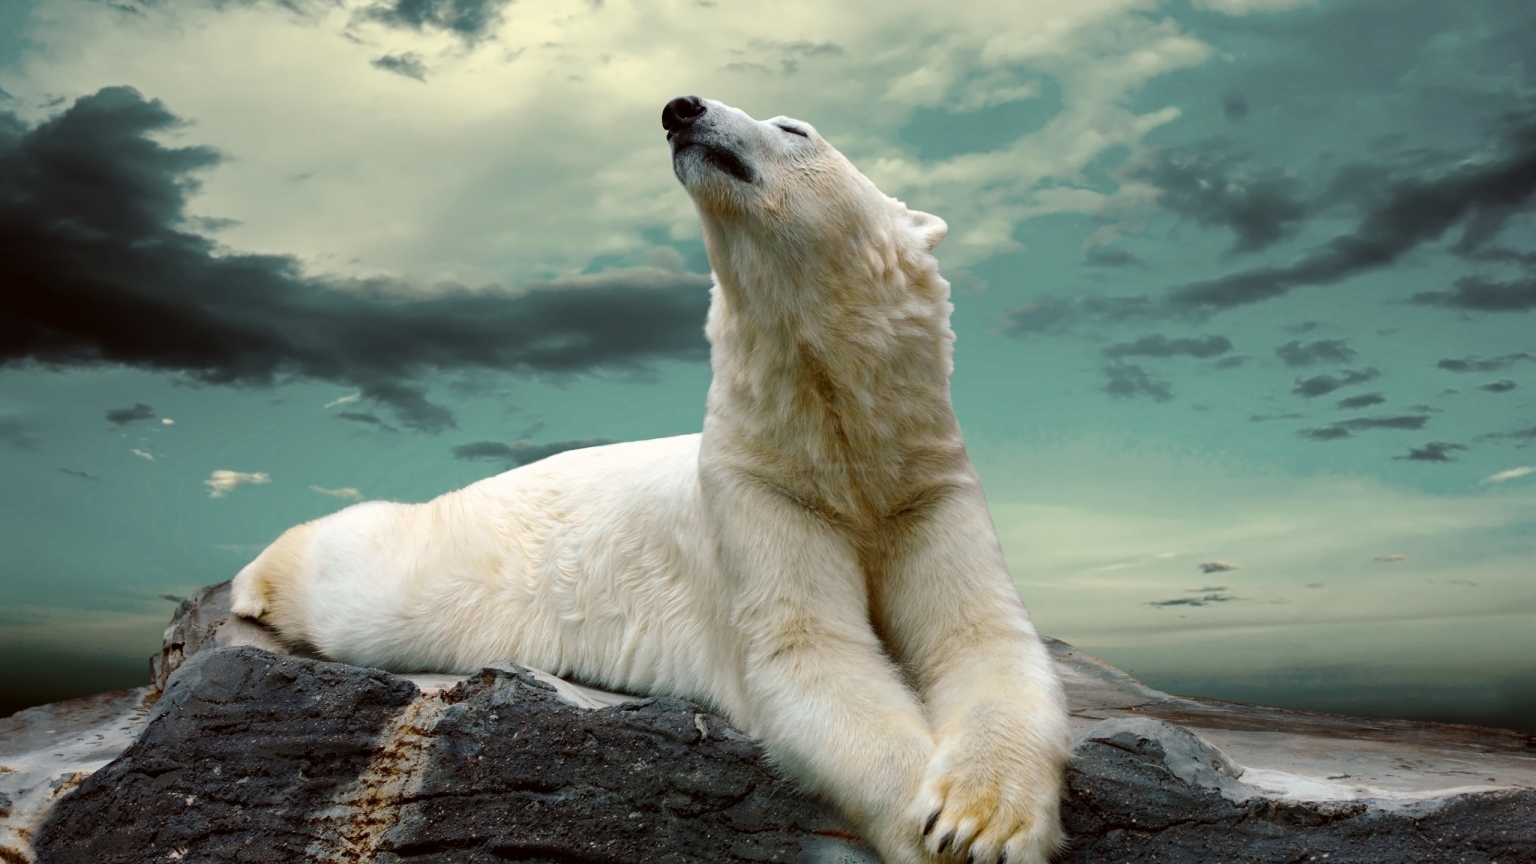 Polar Bear Dreaming for 1536 x 864 HDTV resolution